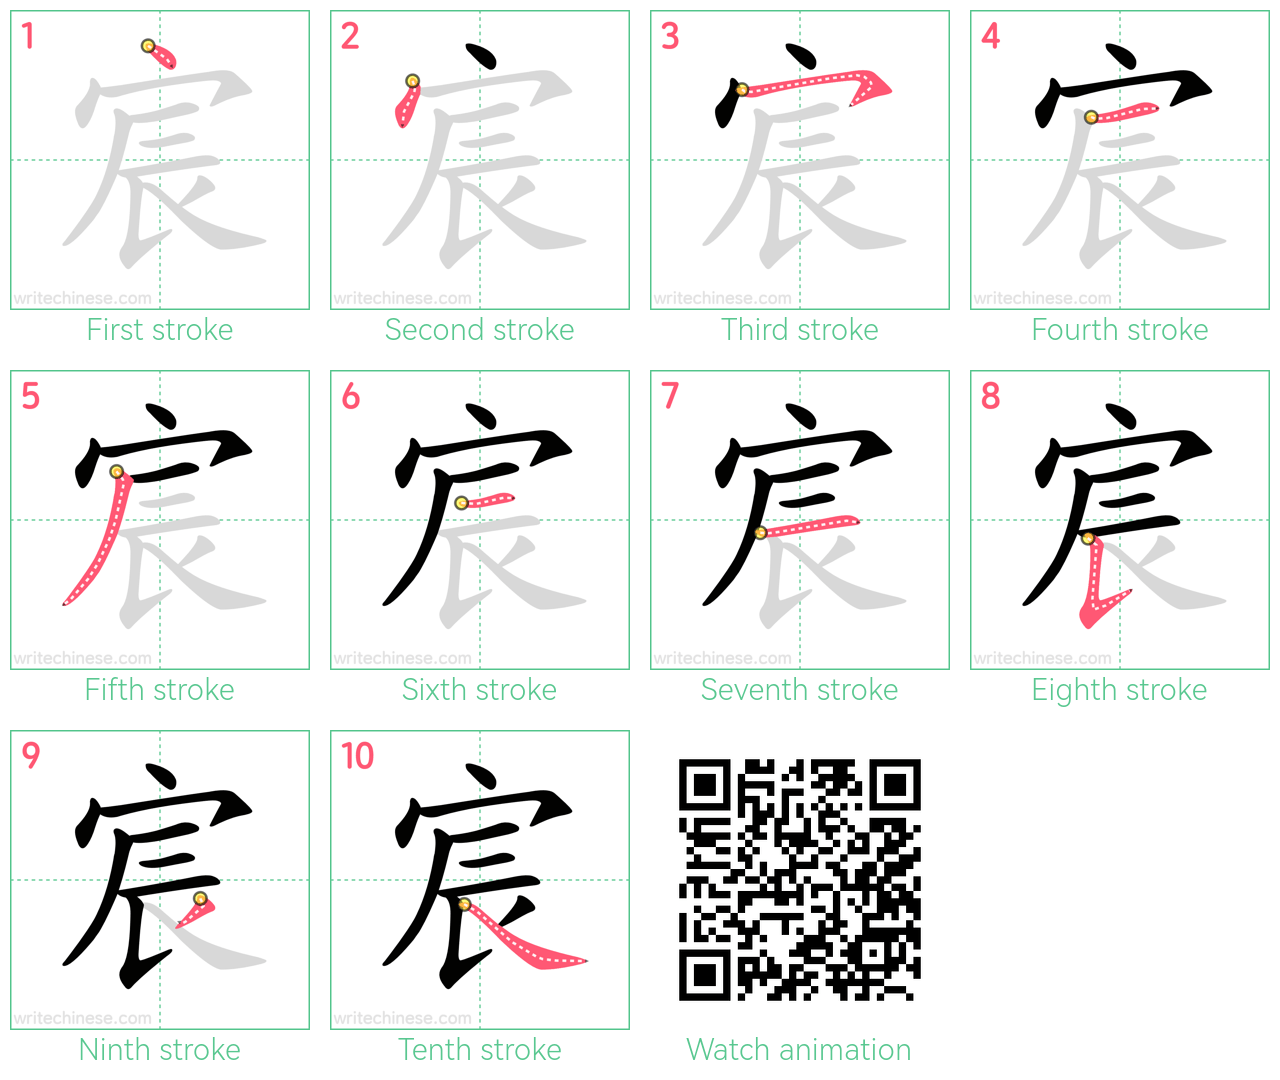 宸 step-by-step stroke order diagrams